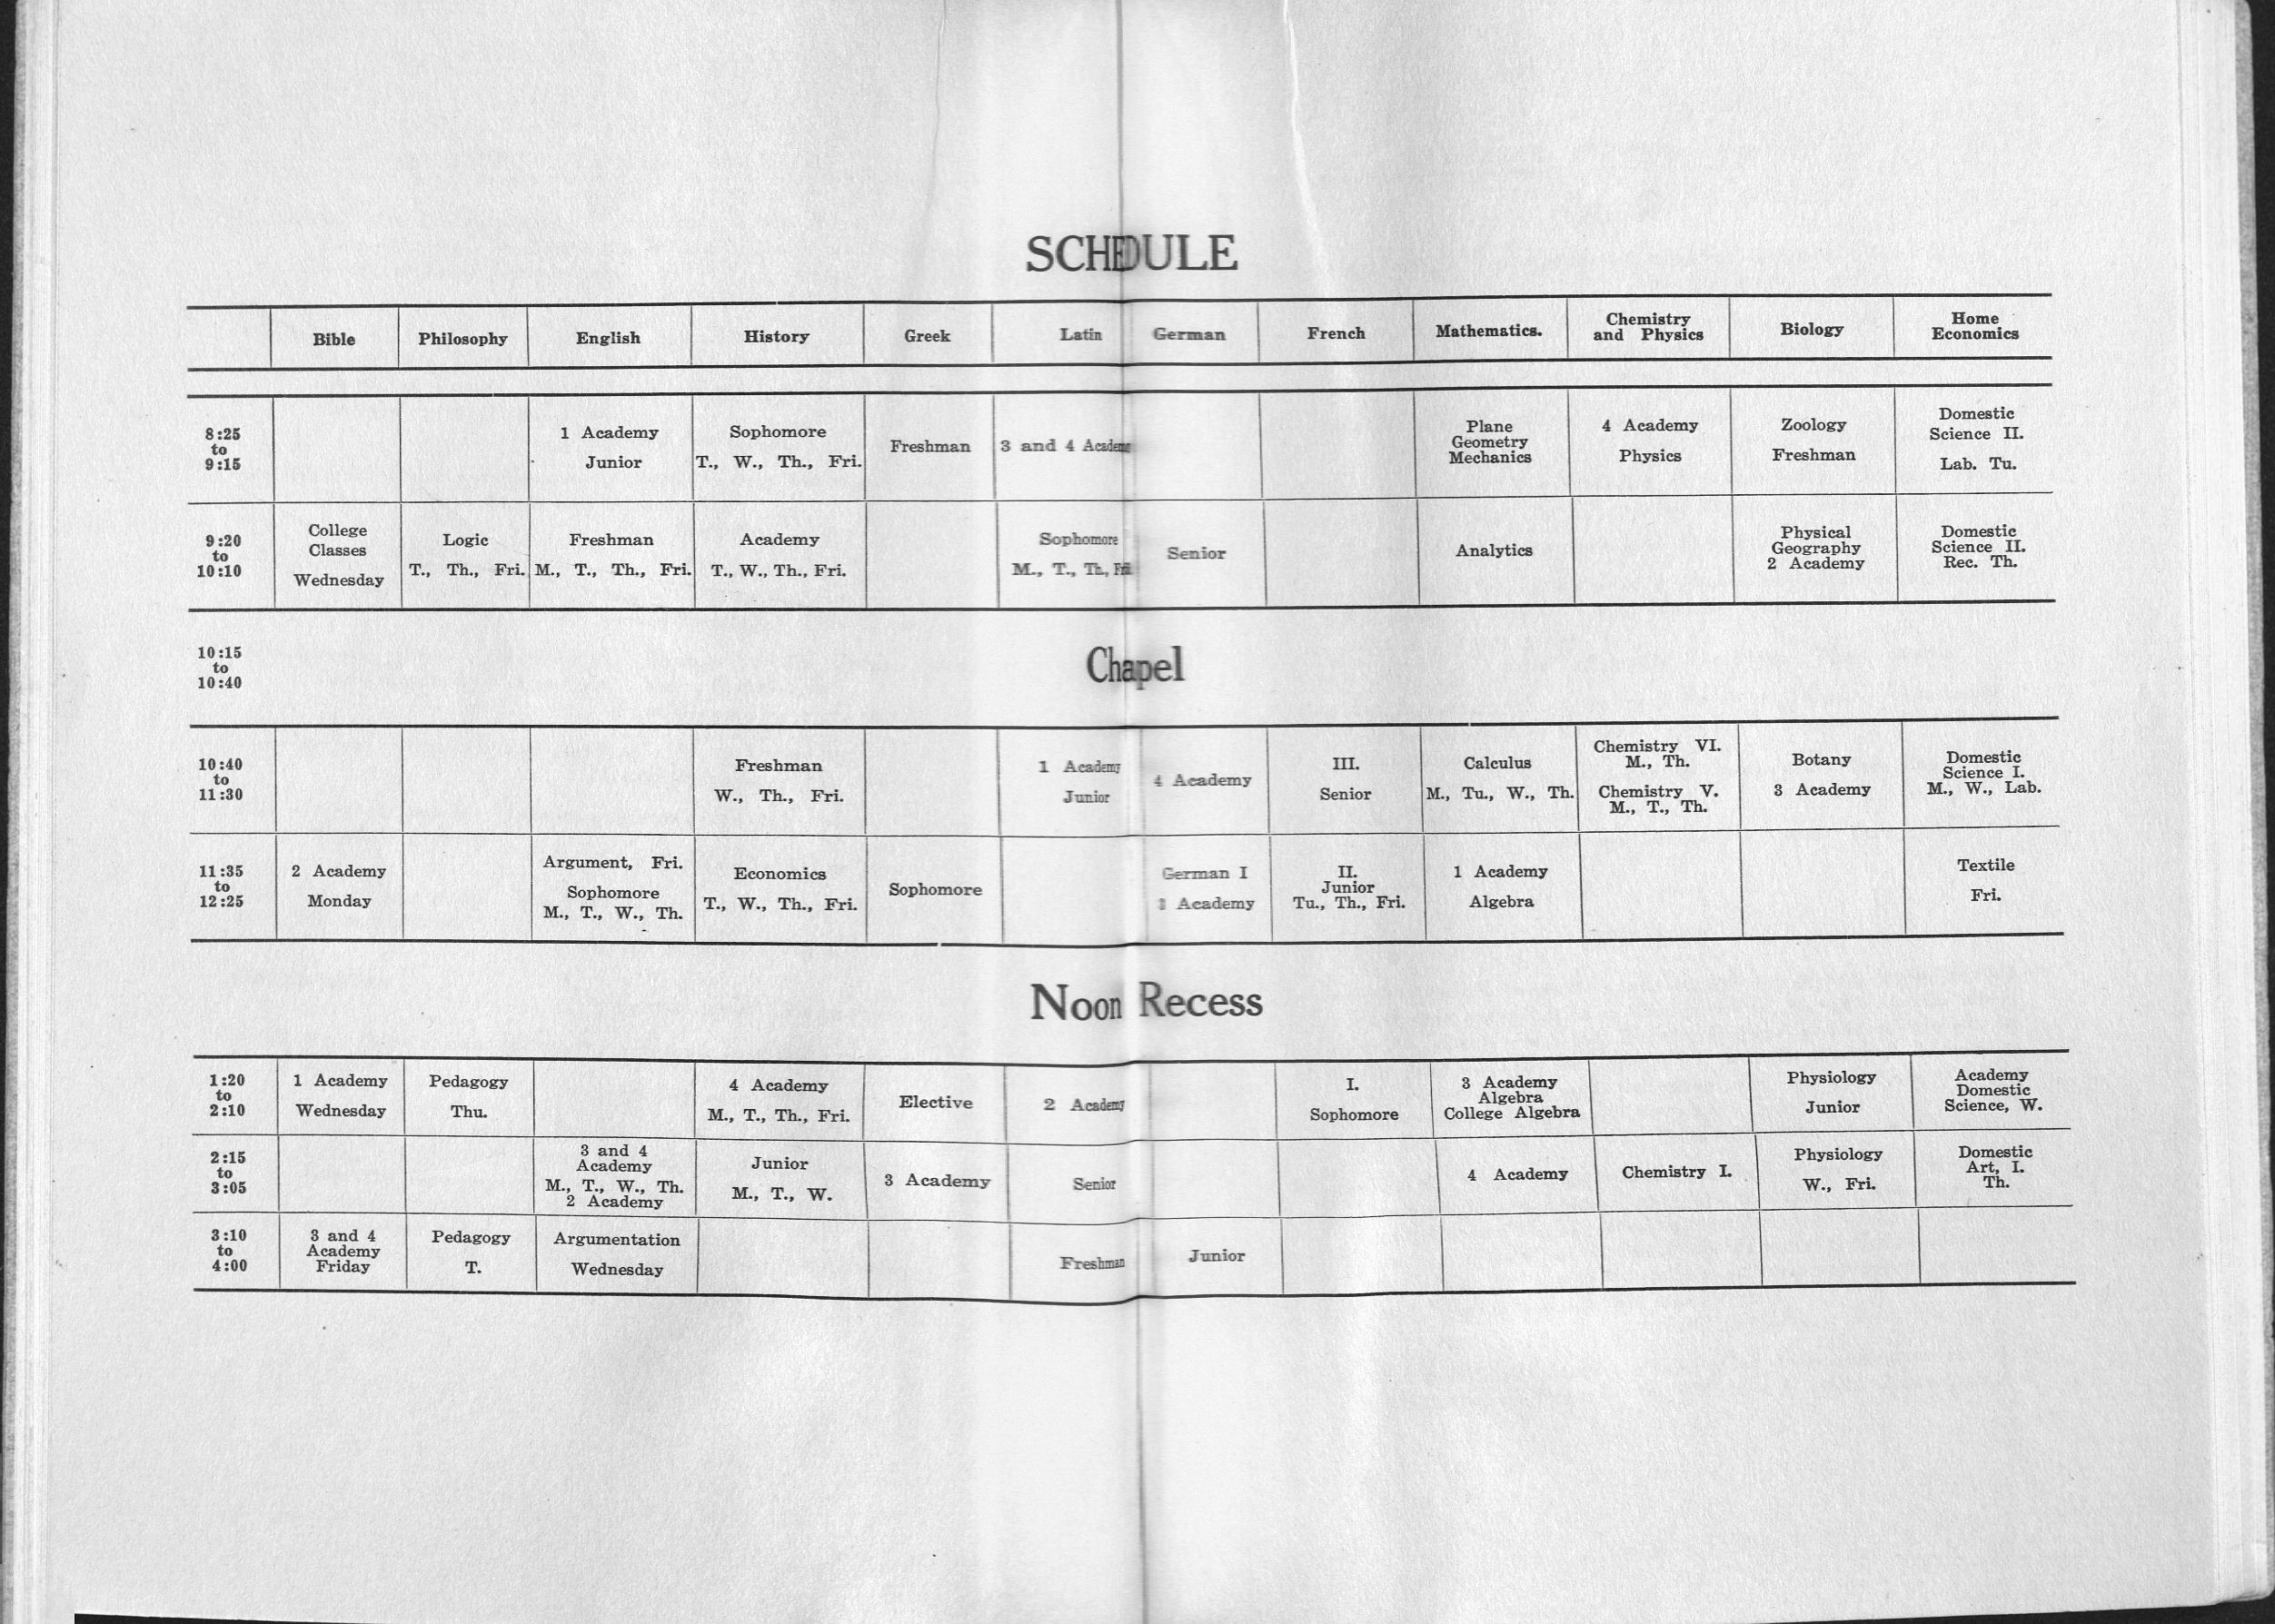 1913 class schedule in catalog